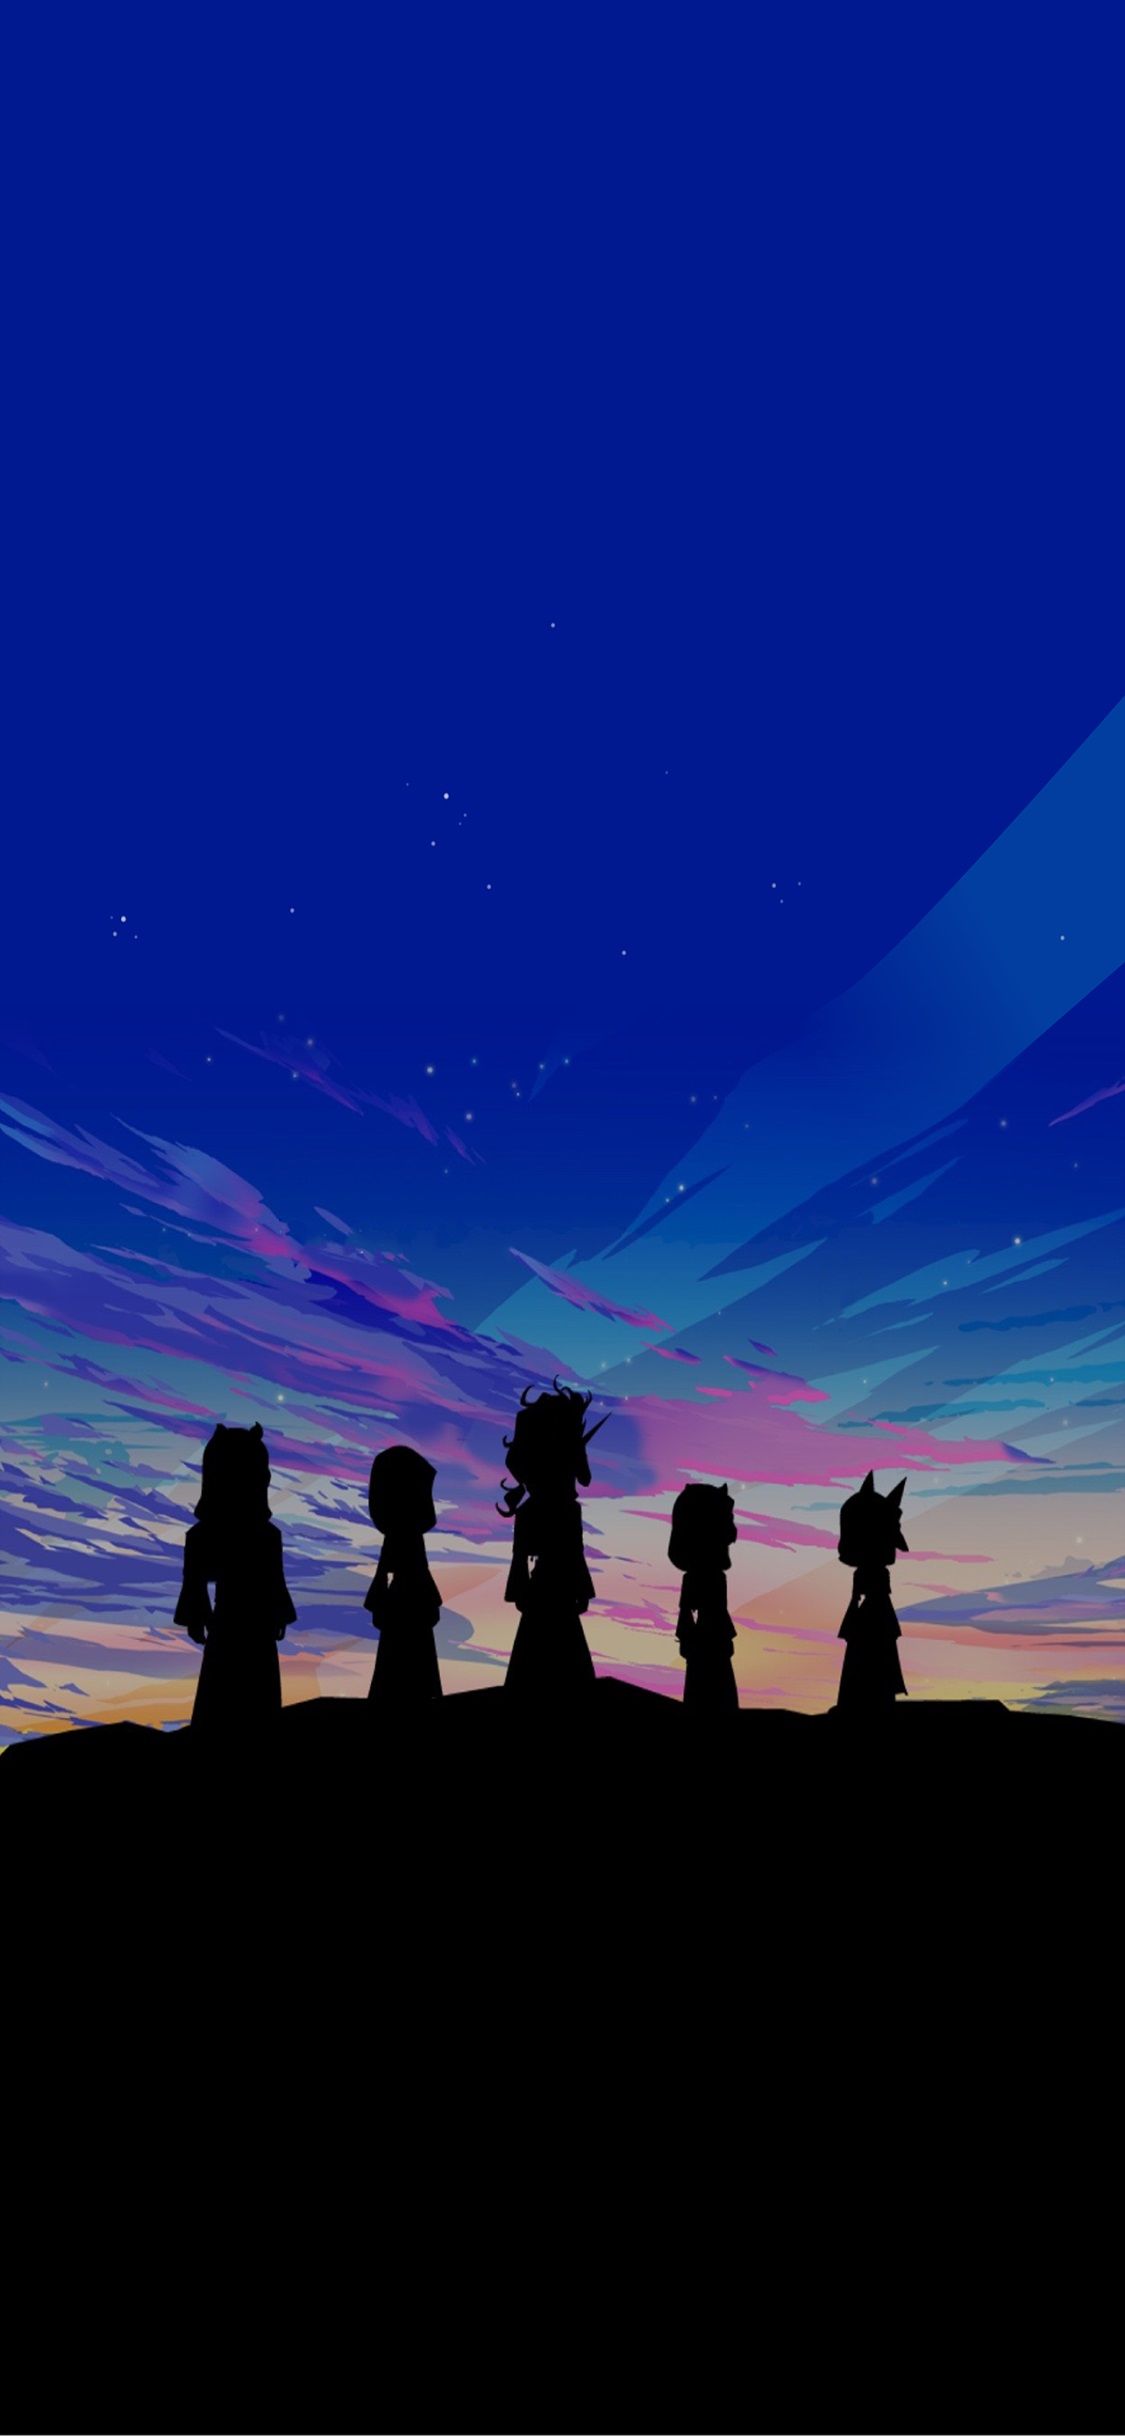 Kingdom Hearts Aqua iPhone Wallpaper ↺ Wallpaper & Background Download